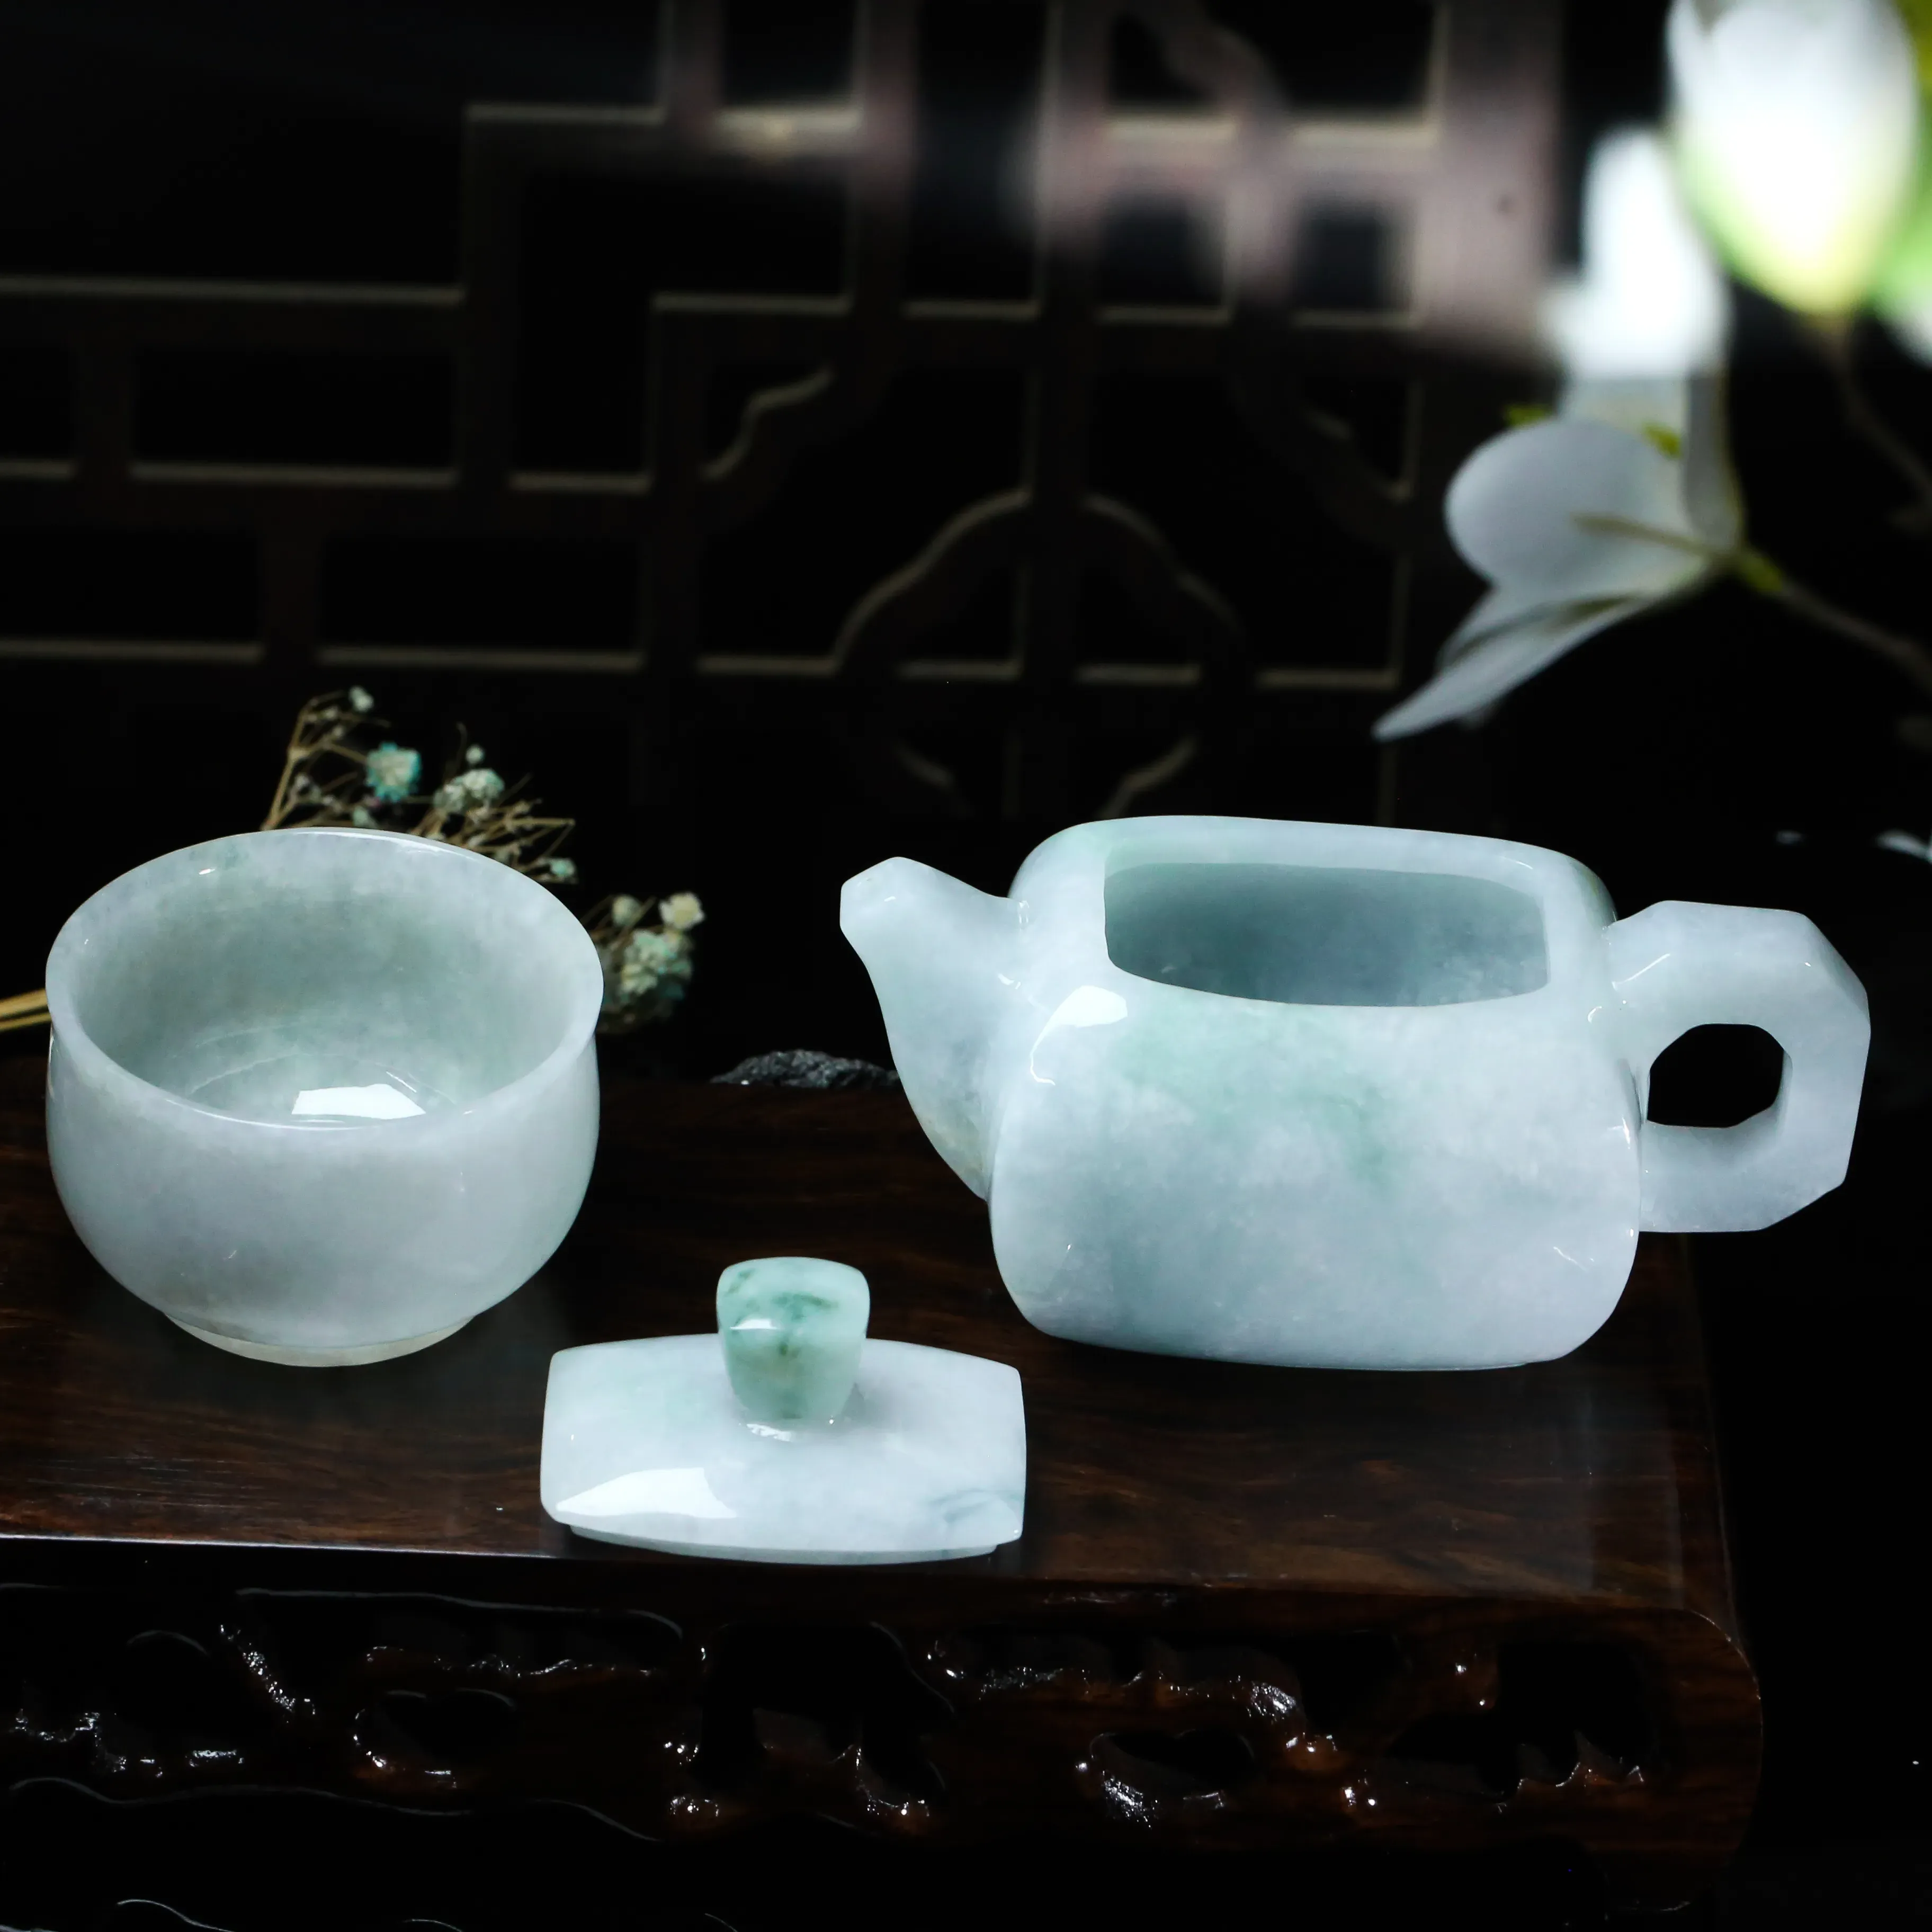 茶壶、茶杯翡翠摆件。手工雕刻，色泽清新，雕工精细。壶身尺寸：104.2*64.6*53.7mm